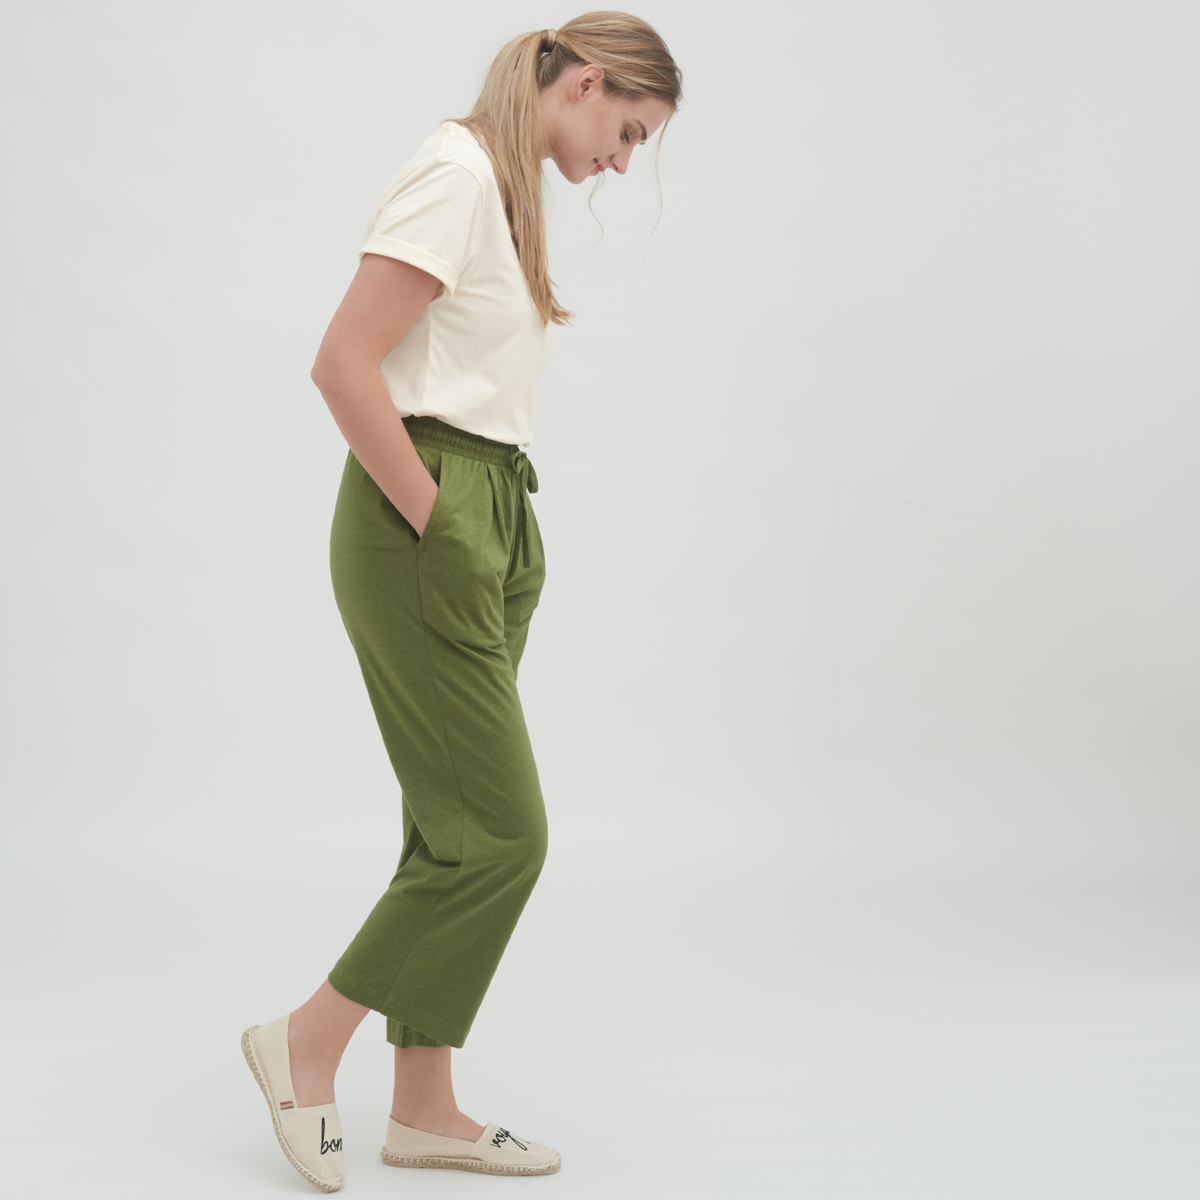 Green Women Trousers